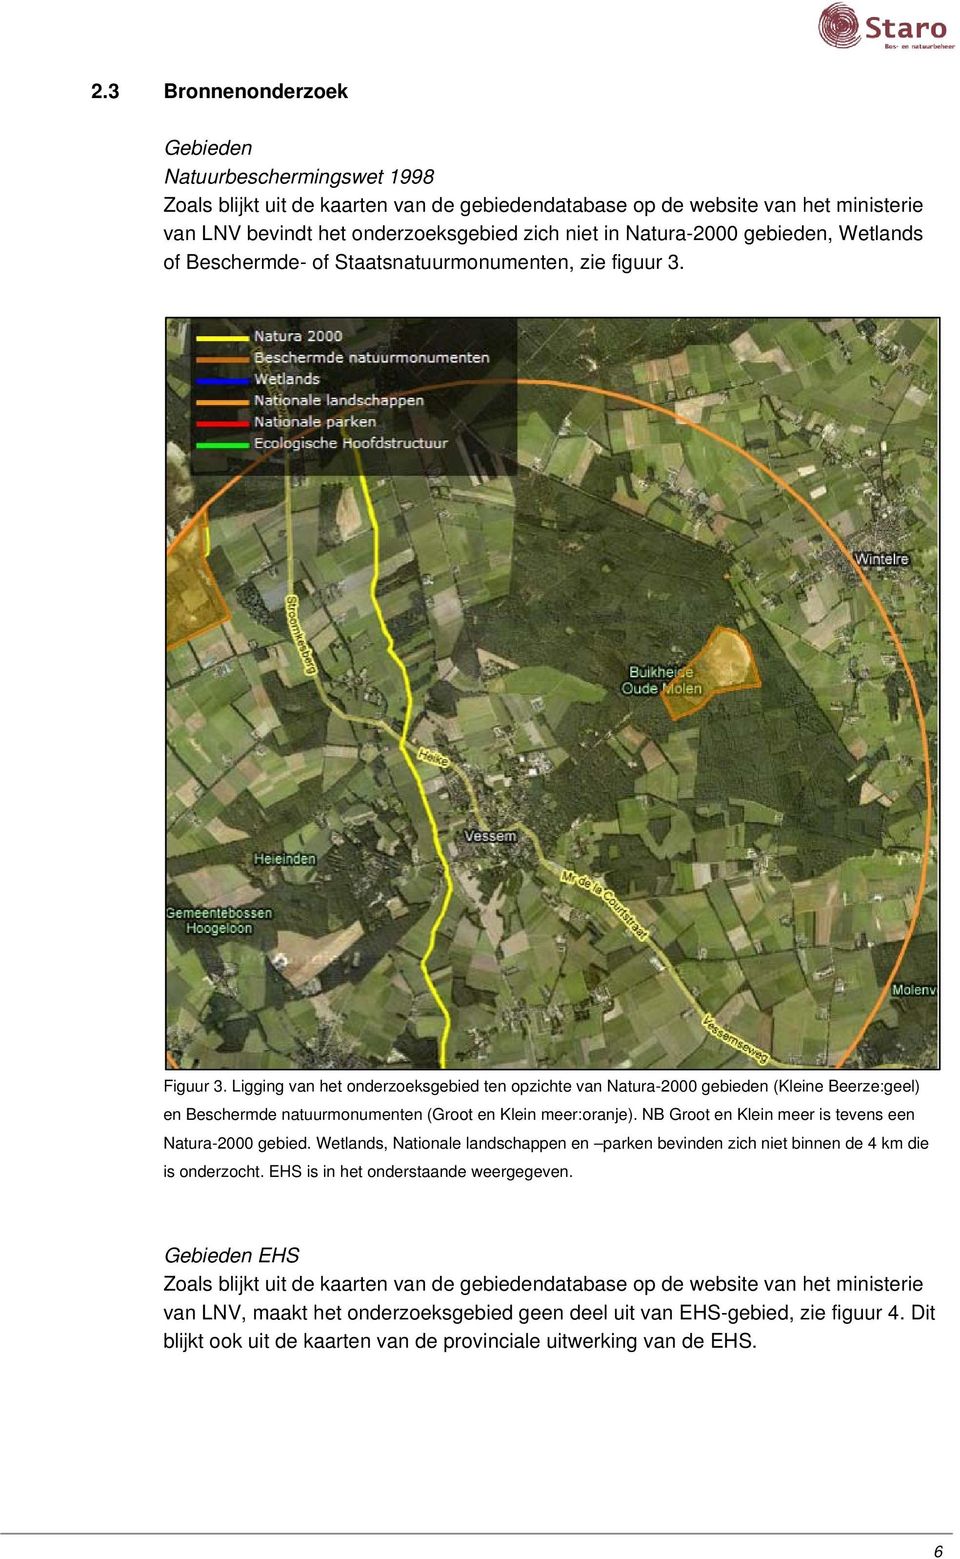 Ligging van het onderzoeksgebied ten opzichte van Natura-2000 gebieden (Kleine Beerze:geel) en Beschermde natuurmonumenten (Groot en Klein meer:oranje).